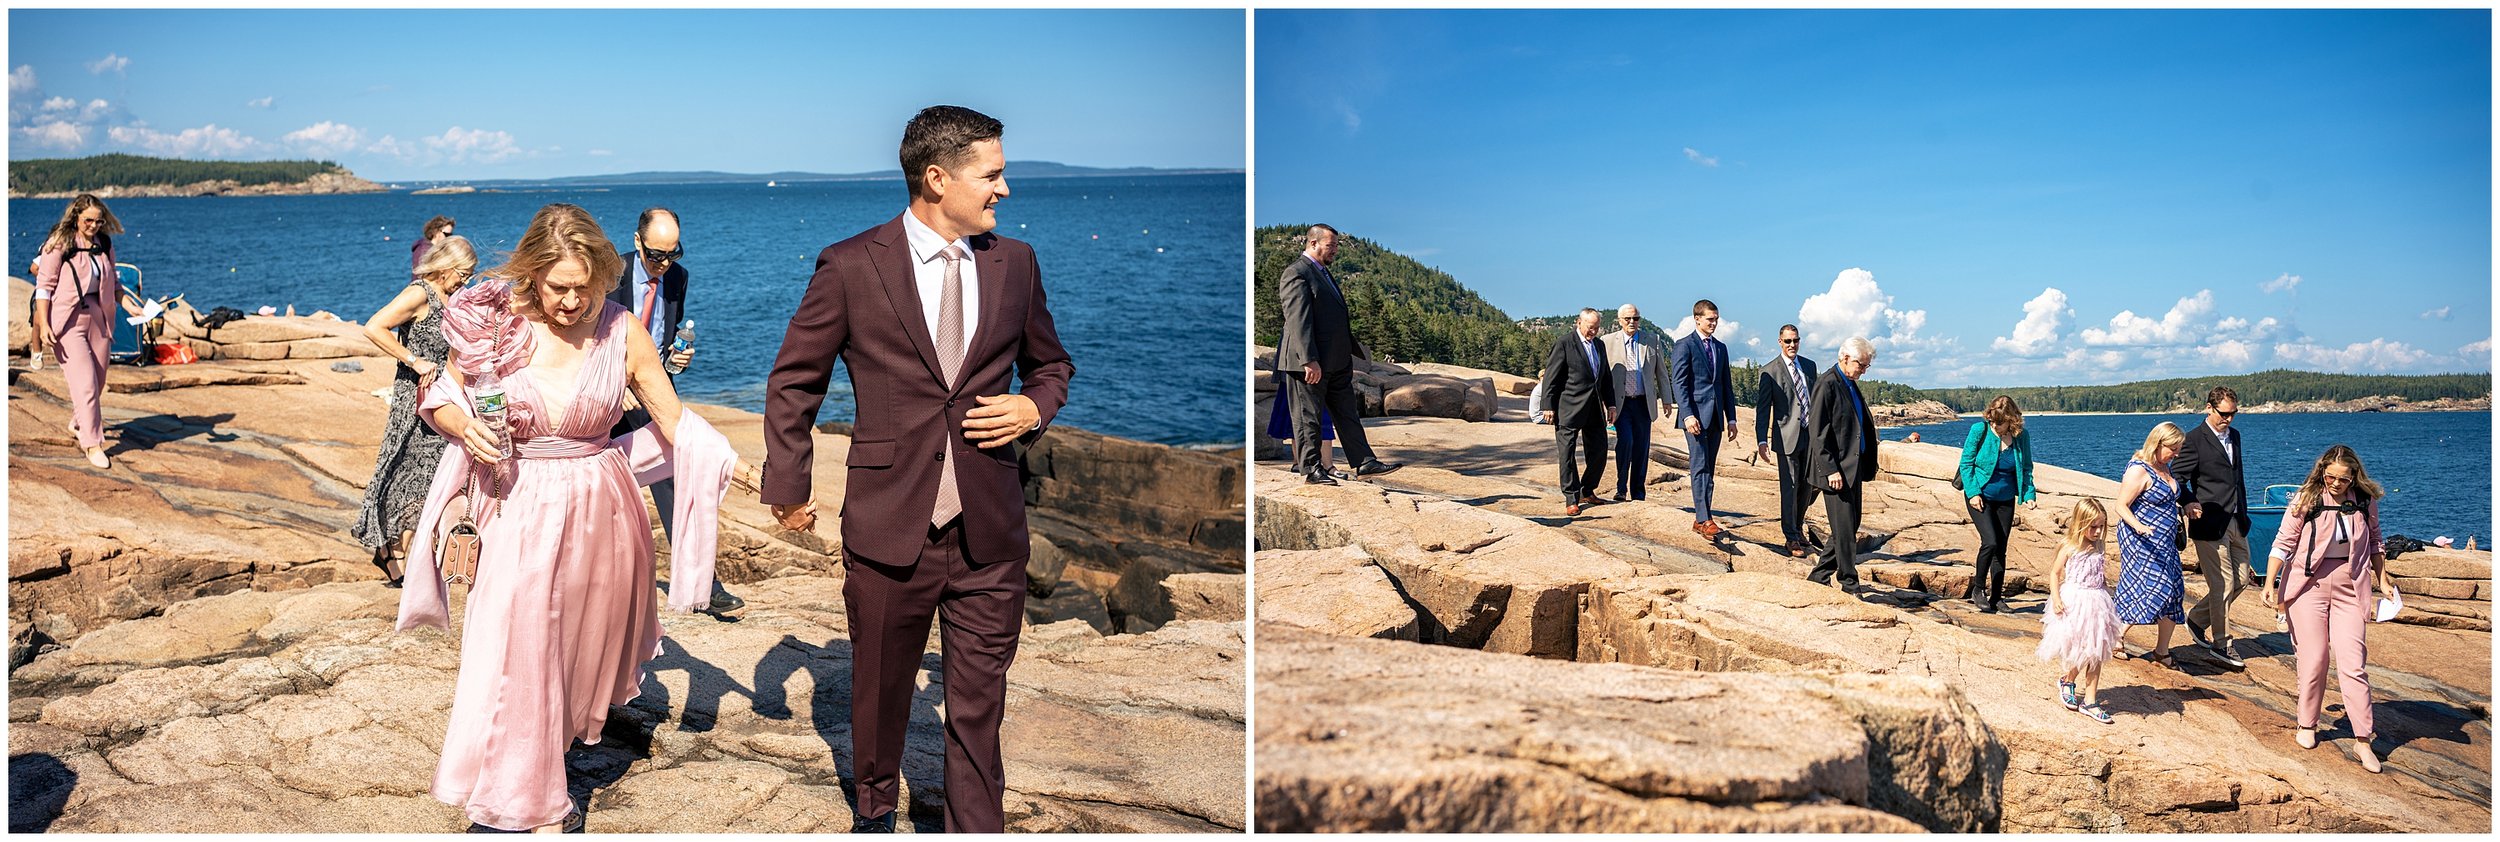 Acadia National Park Wedding Photographers, Bar Harbor Wedding Photographers, Two Adventurous Souls- 082423_0027.jpg